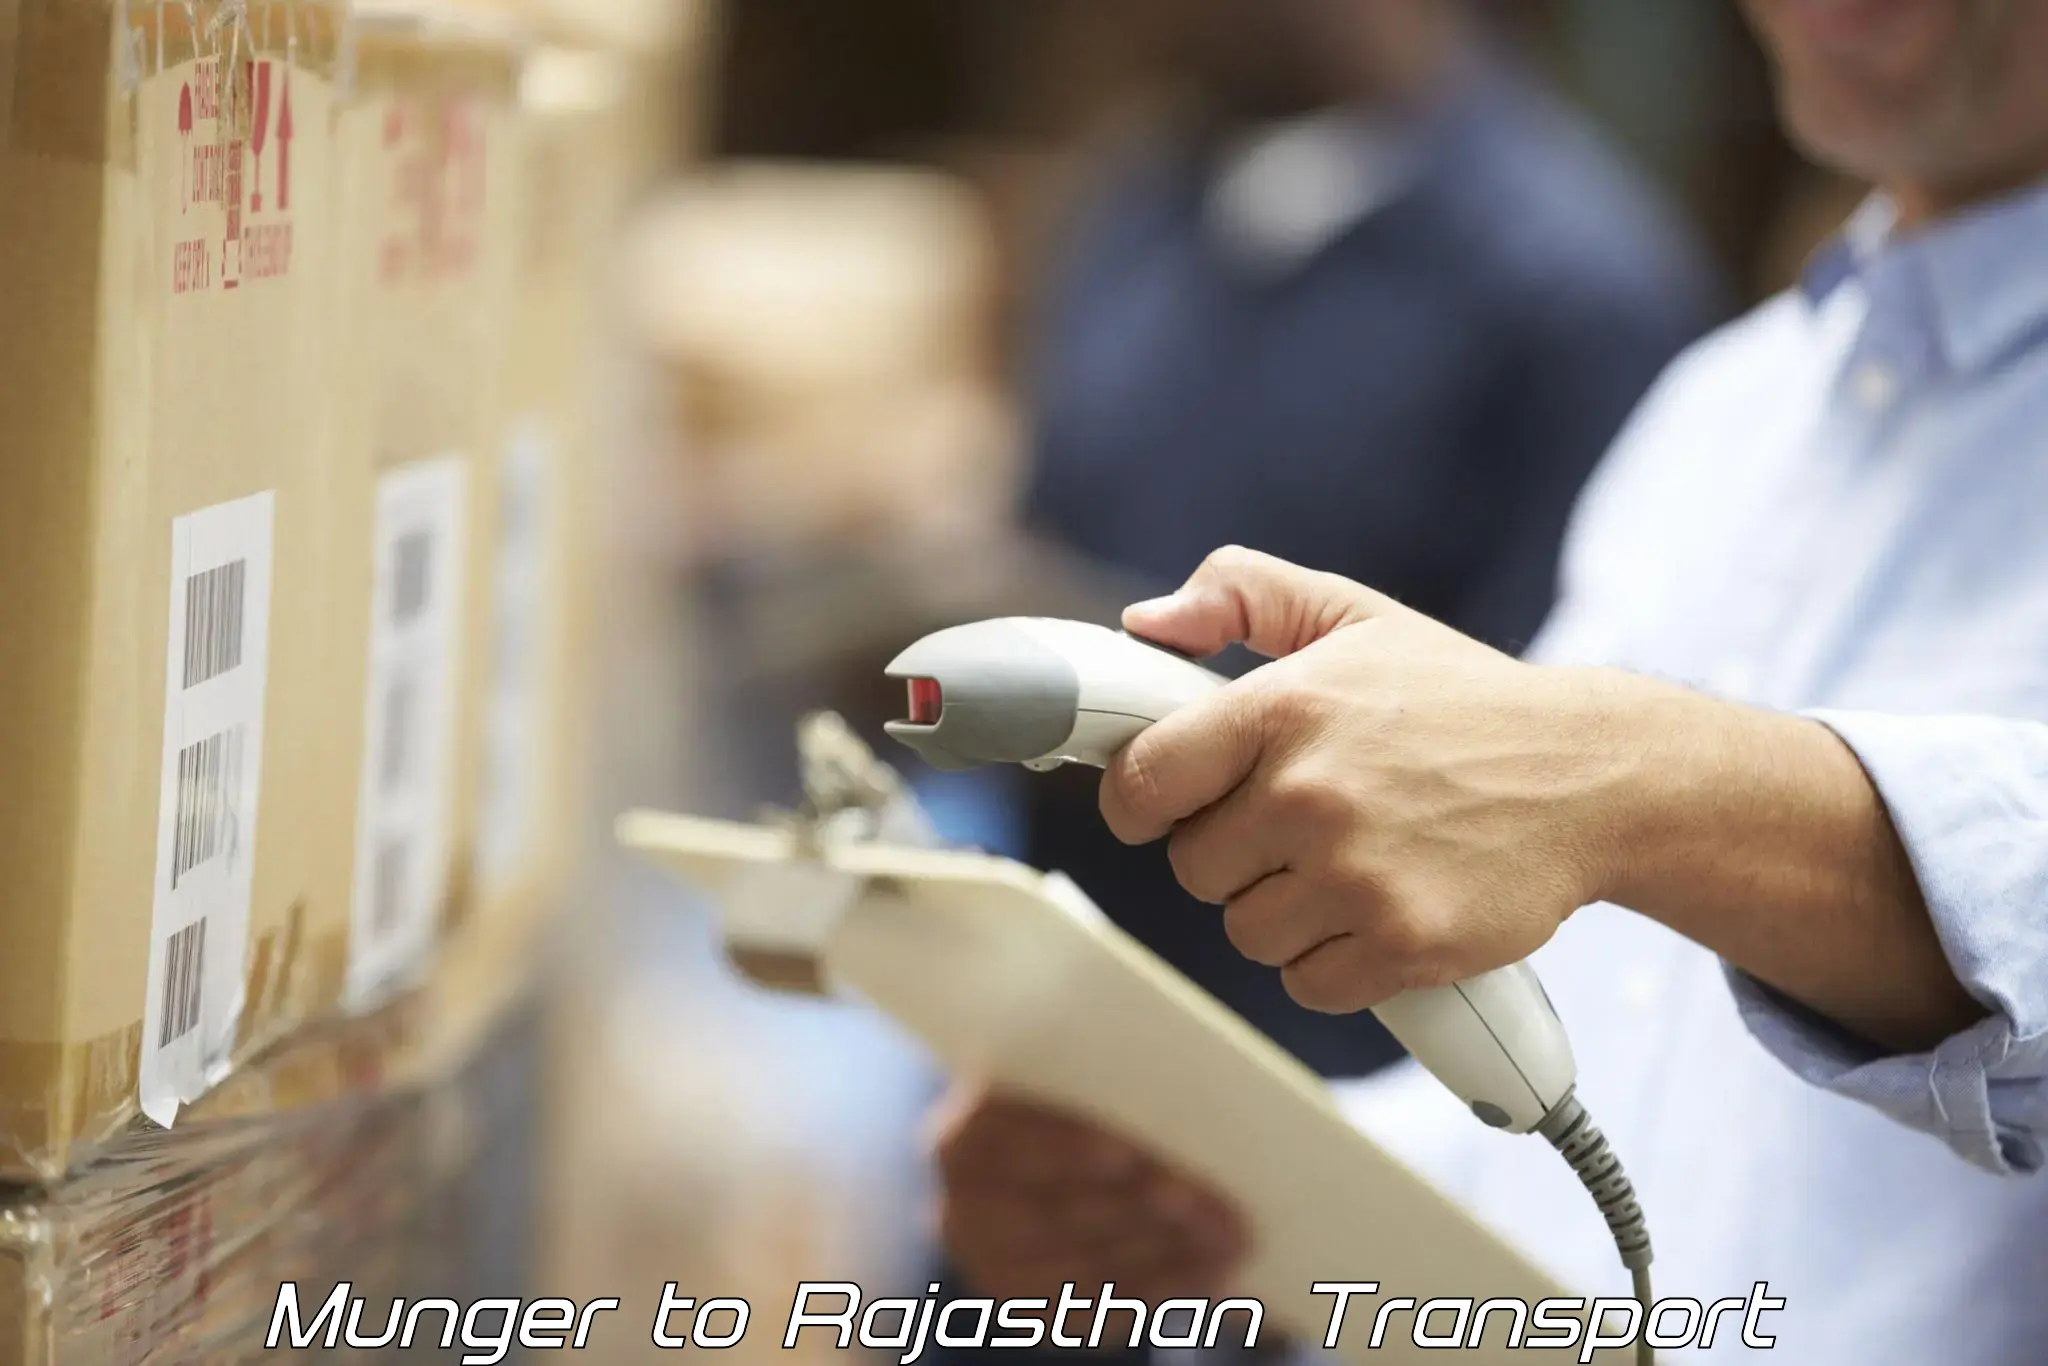 Furniture transport service Munger to Rajasthan